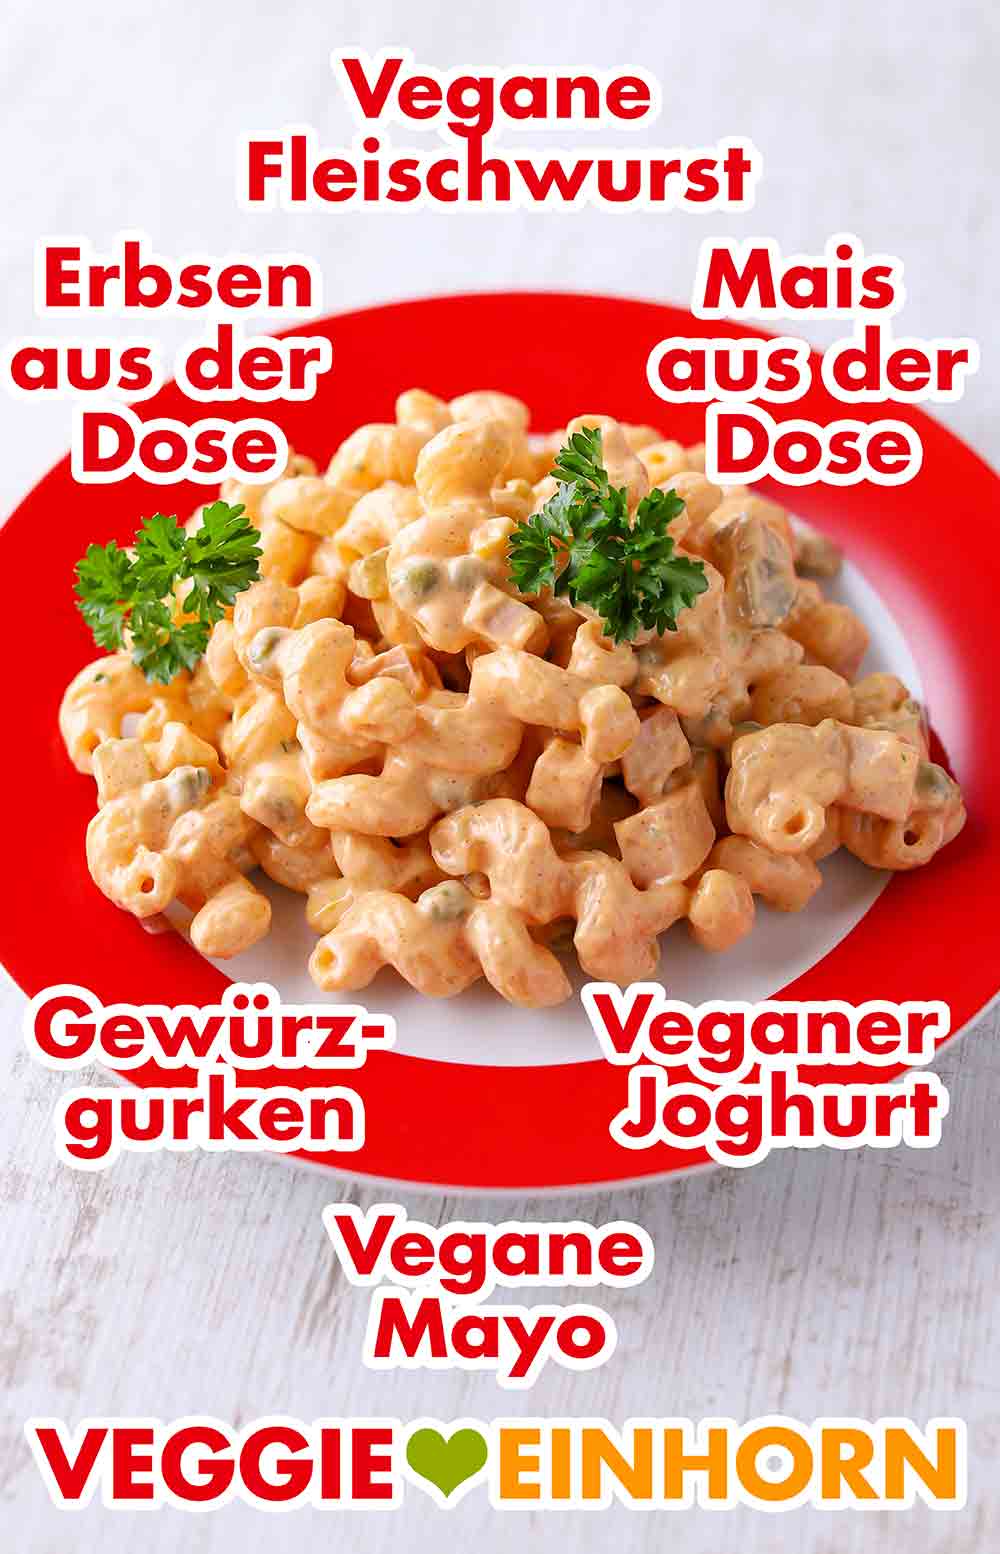 Nudelsalat mit veganer Fleischwurst, Erbsen und Mais aus der Dose, Gewürzgurken, veganer Mayo und Joghurt